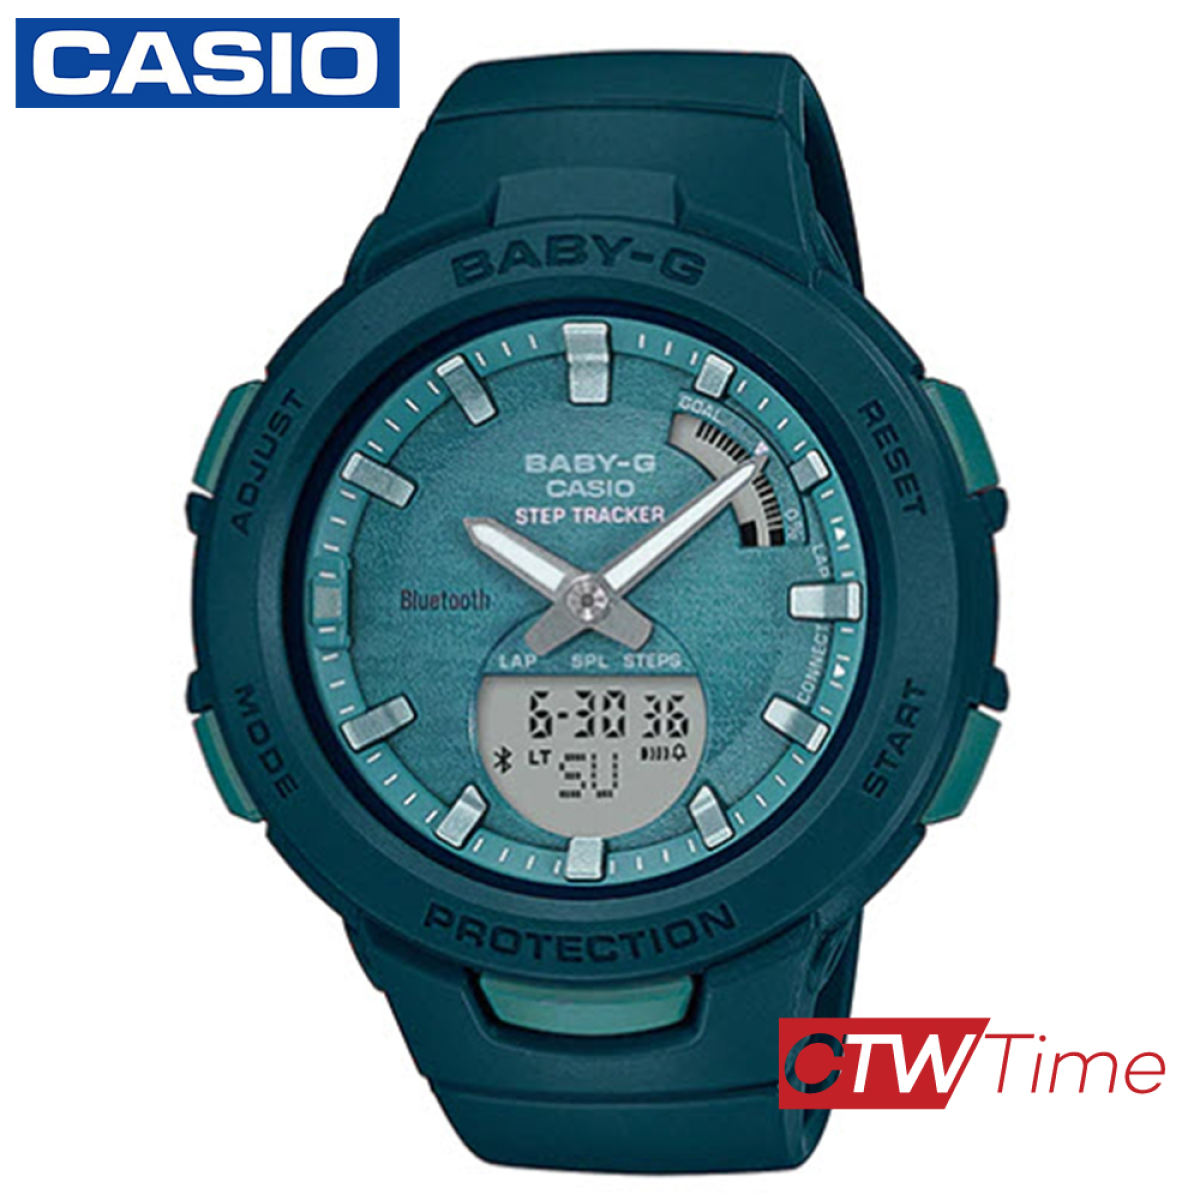 Casio Baby-g นาฬิกาข้อมือผู้หญิง สายเรซิ่น รุ่น BSA-B100AC-3ADR  (สีเขียว)